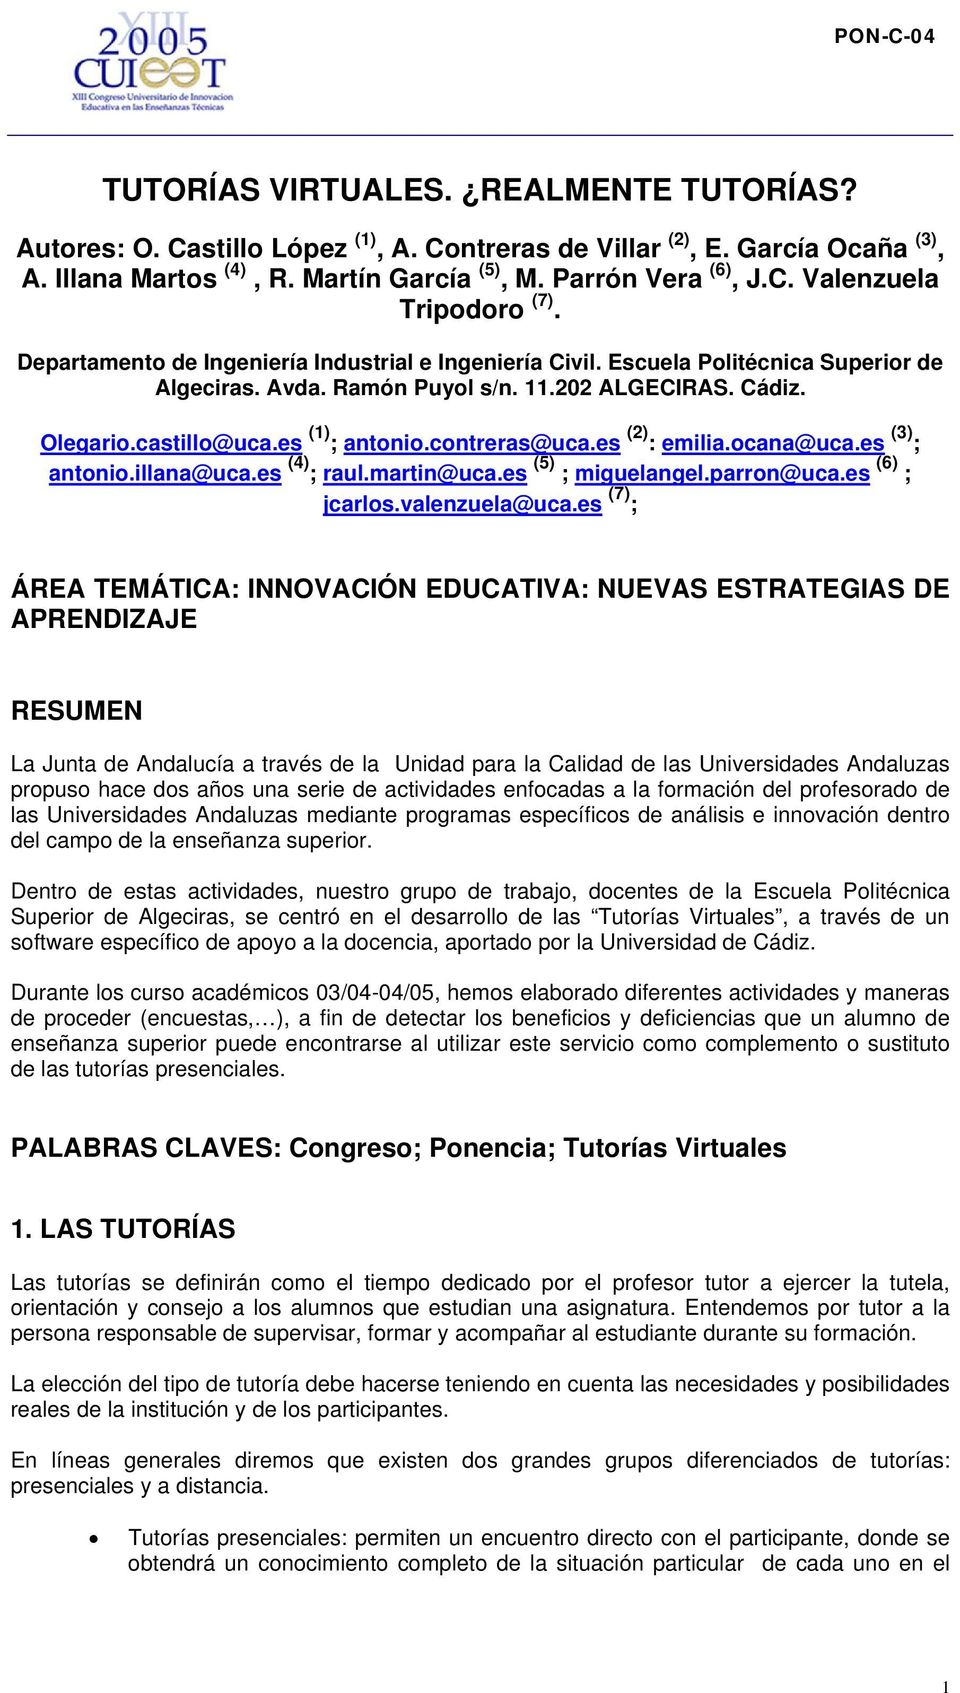 contreras@uca.es (2) : emilia.ocana@uca.es (3) ; antonio.illana@uca.es (4) ; raul.martin@uca.es (5) ; miguelangel.parron@uca.es (6) ; jcarlos.valenzuela@uca.